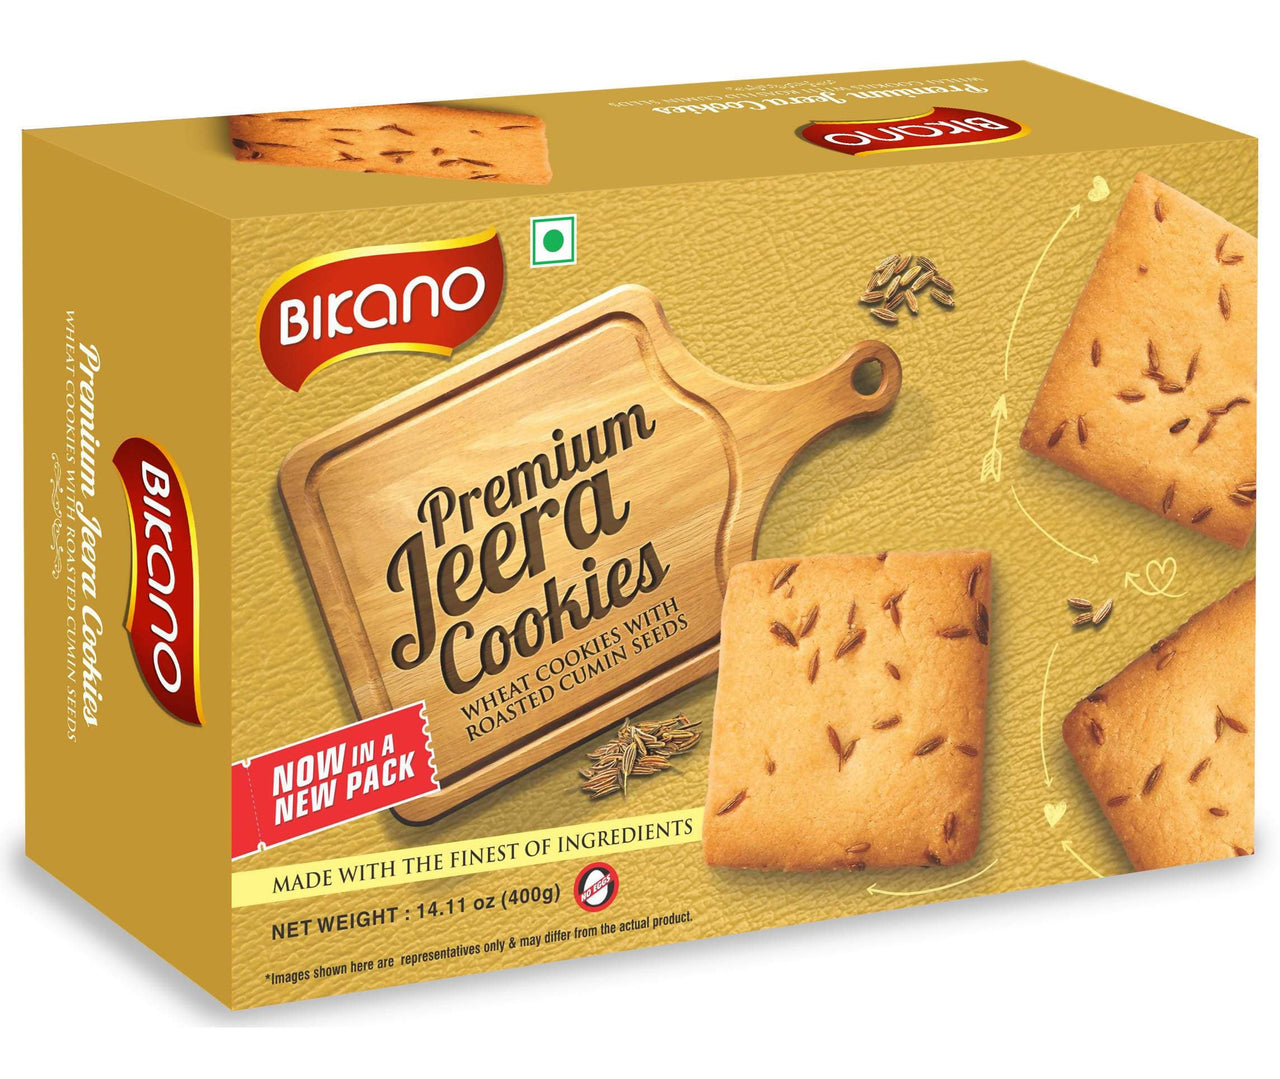 Bikano Premium Jeera Butter Cookies